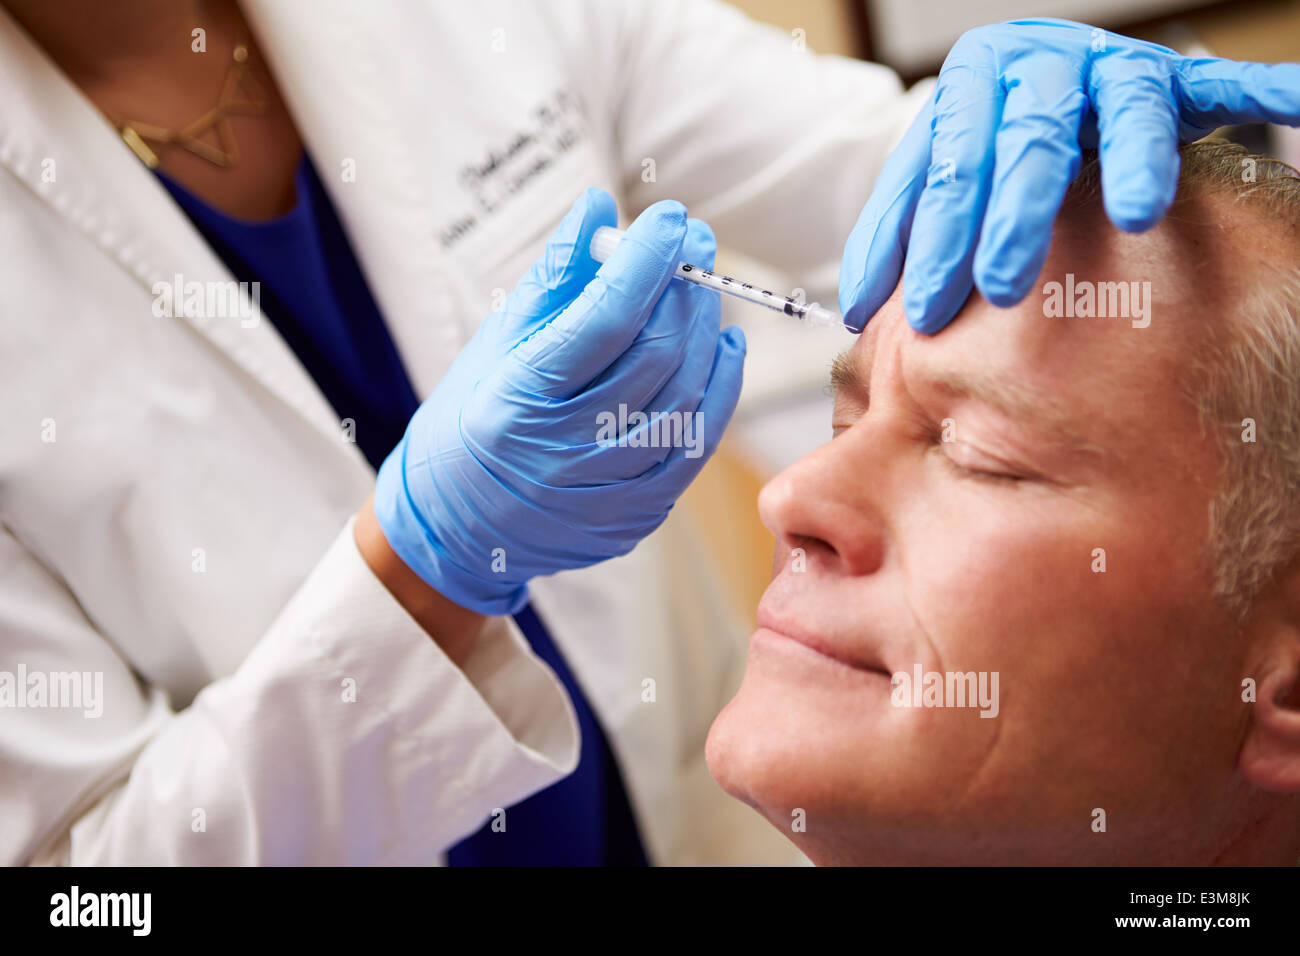 Man Having Botox Treatment At Beauty Clinic Stock Photo